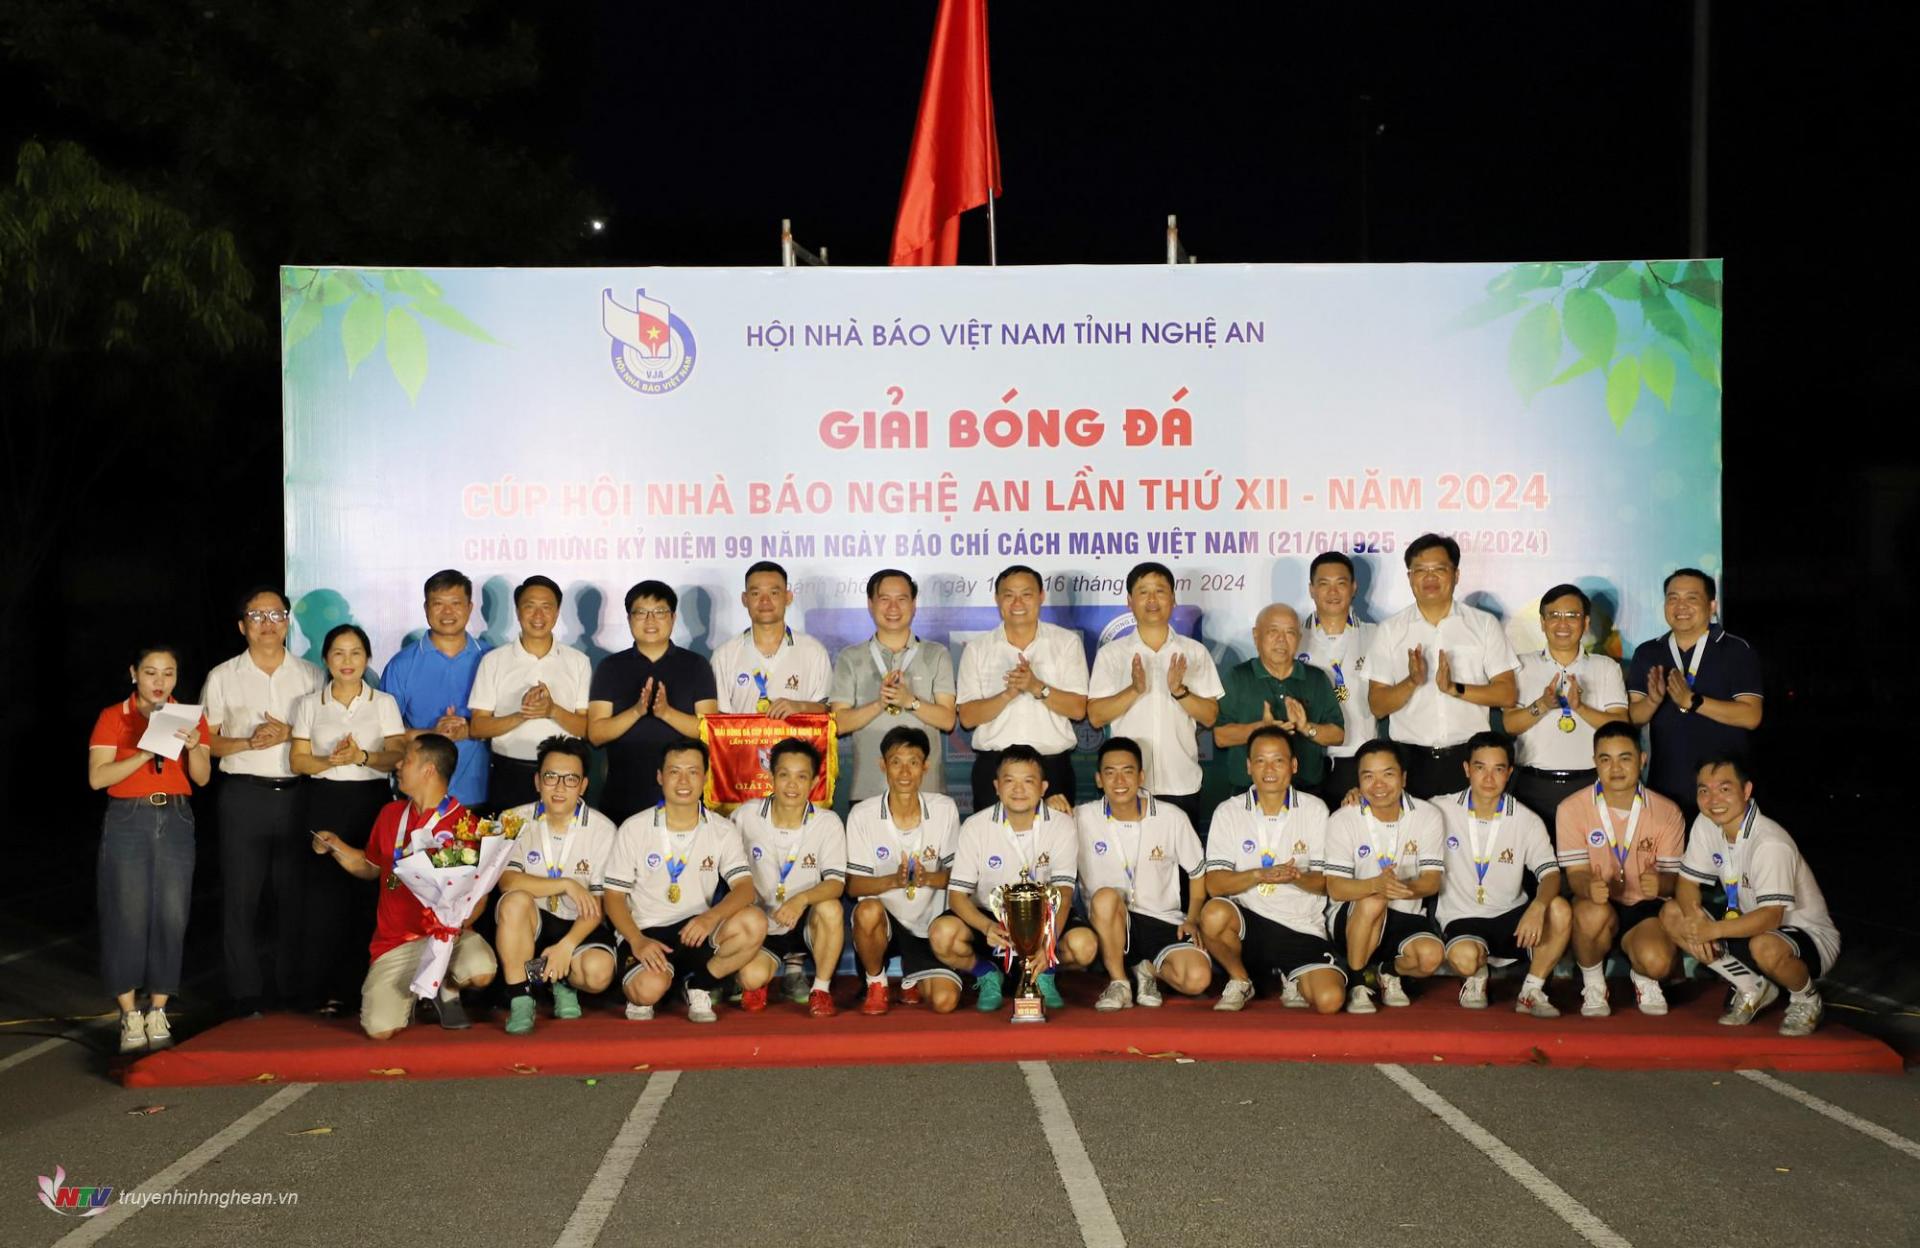 Các đại biểu chụp ảnh lưu niệm cùng đội bóng vô địch Giải bóng đá Cup Nhà báo Nghệ An 